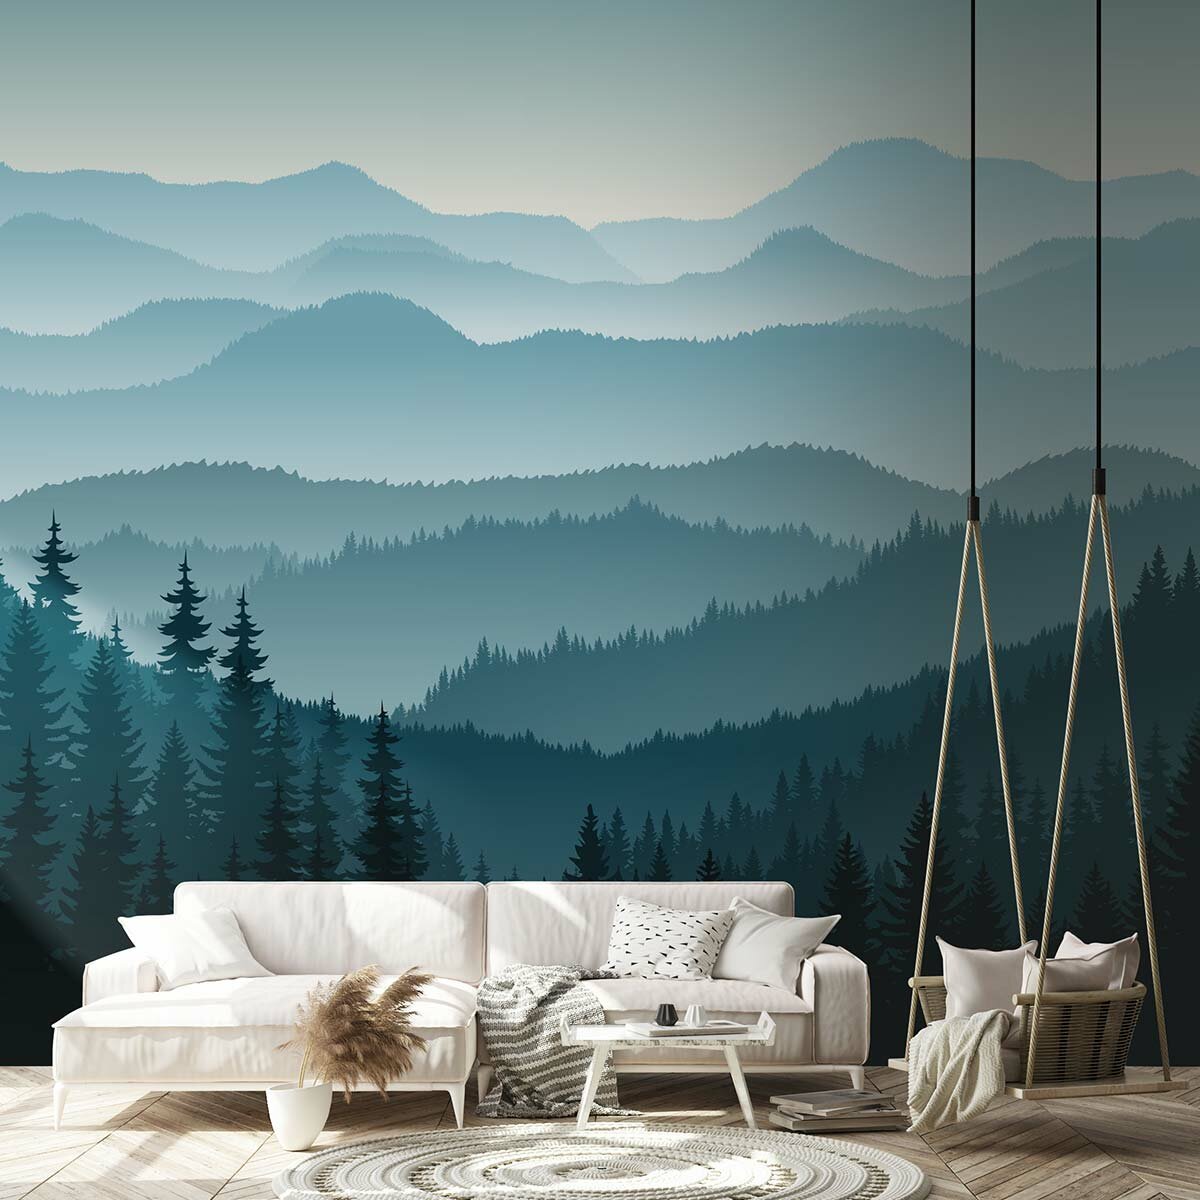 Фотообои флизелиновые с виниловым покрытием VEROL "Лес", 300х283 см, моющиеся обои на стену, декор для дома